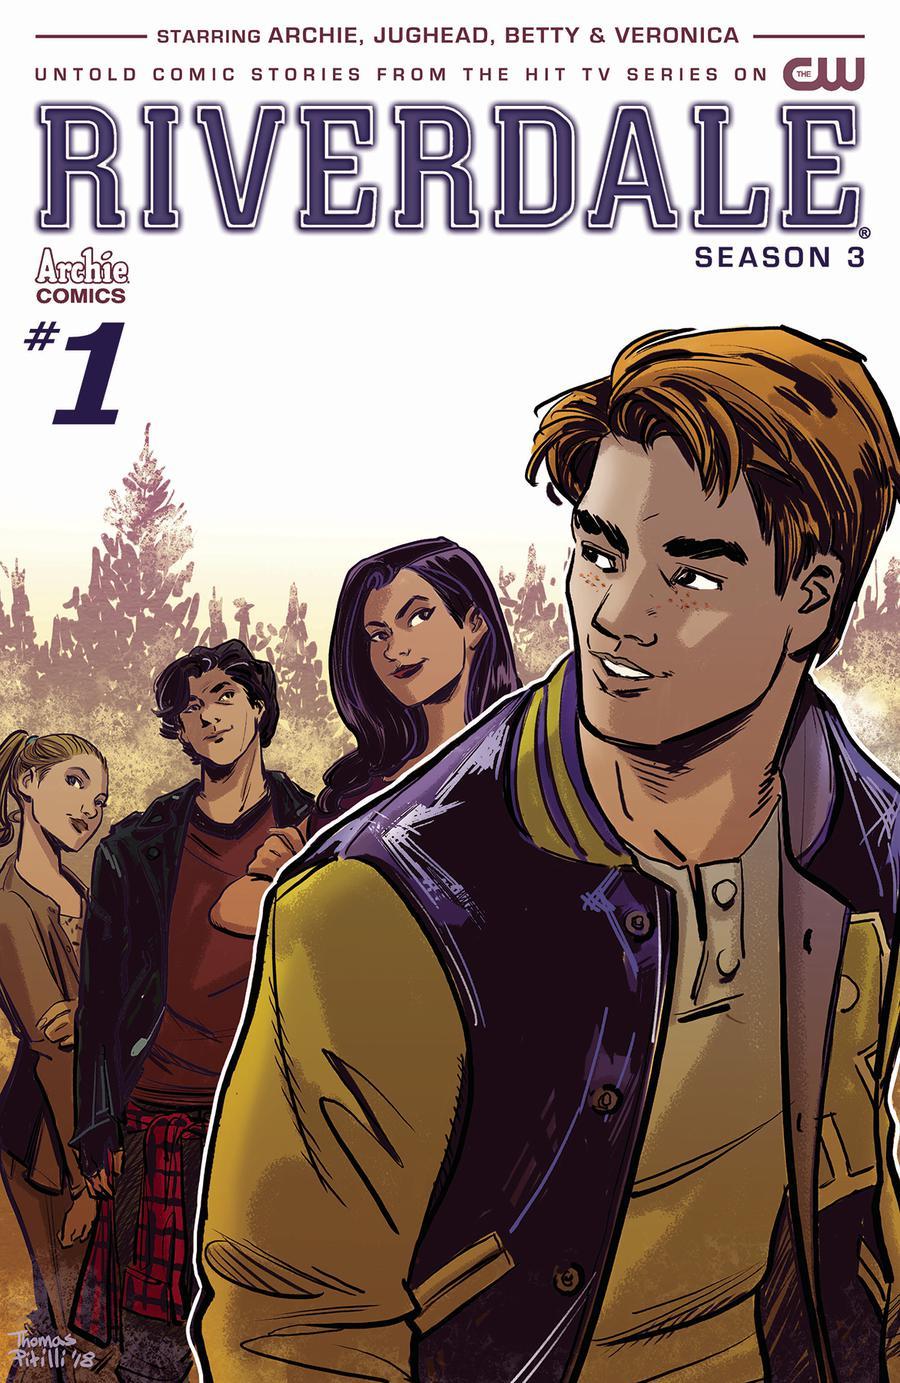 Riverdale Season 3 Vol. 1 #1